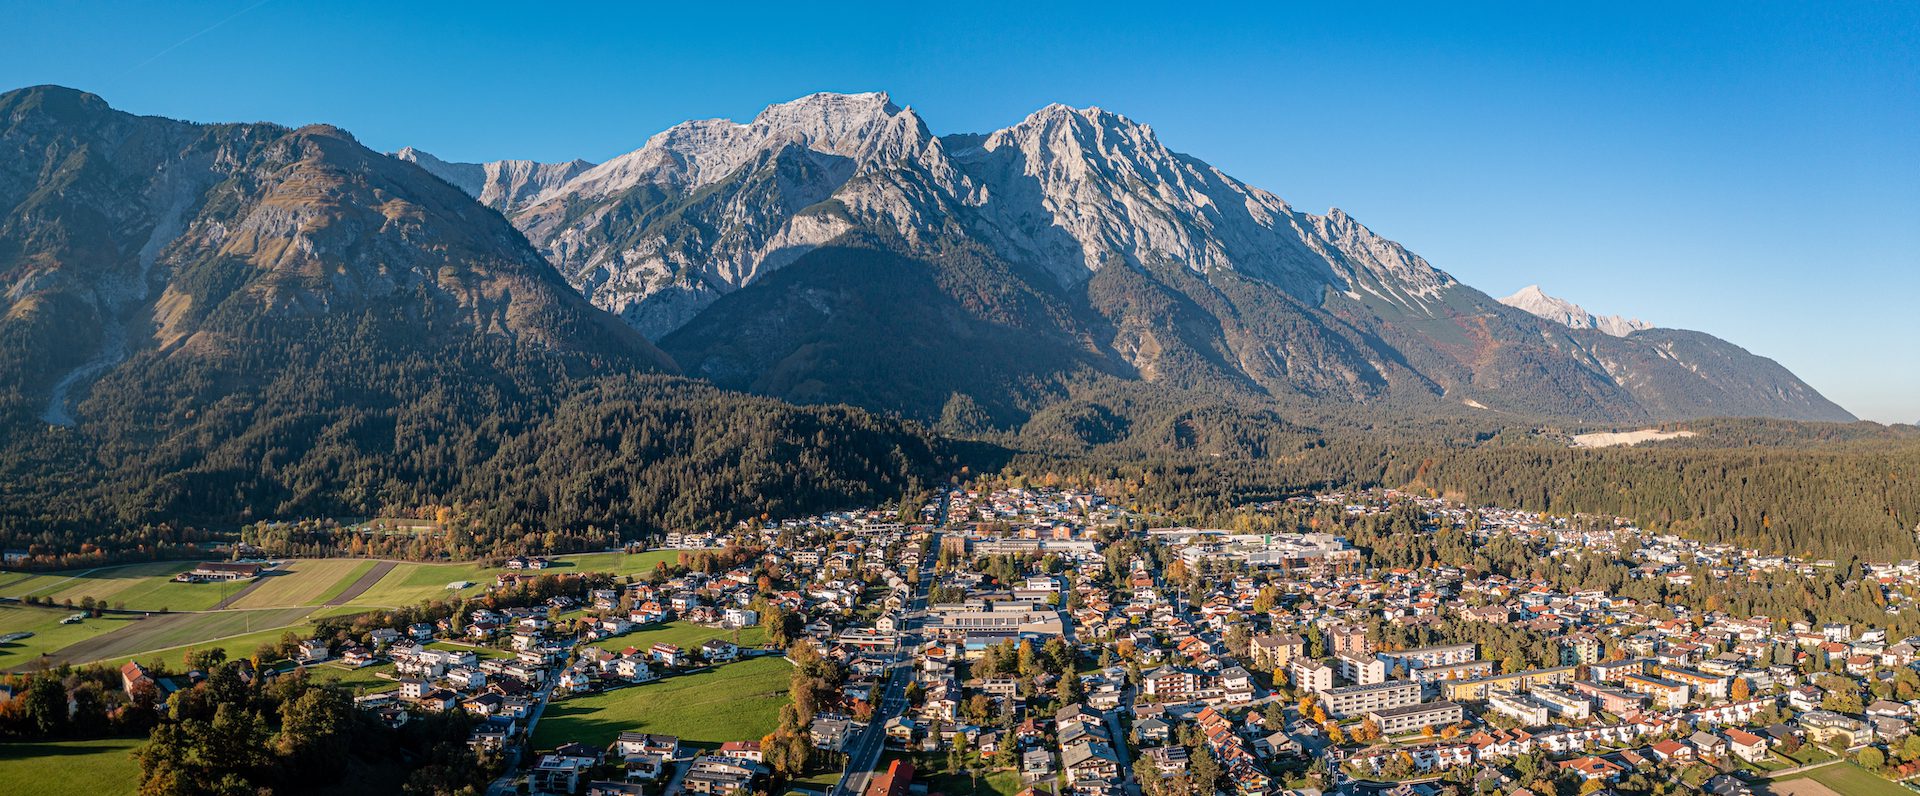 Innsbrucker Tal